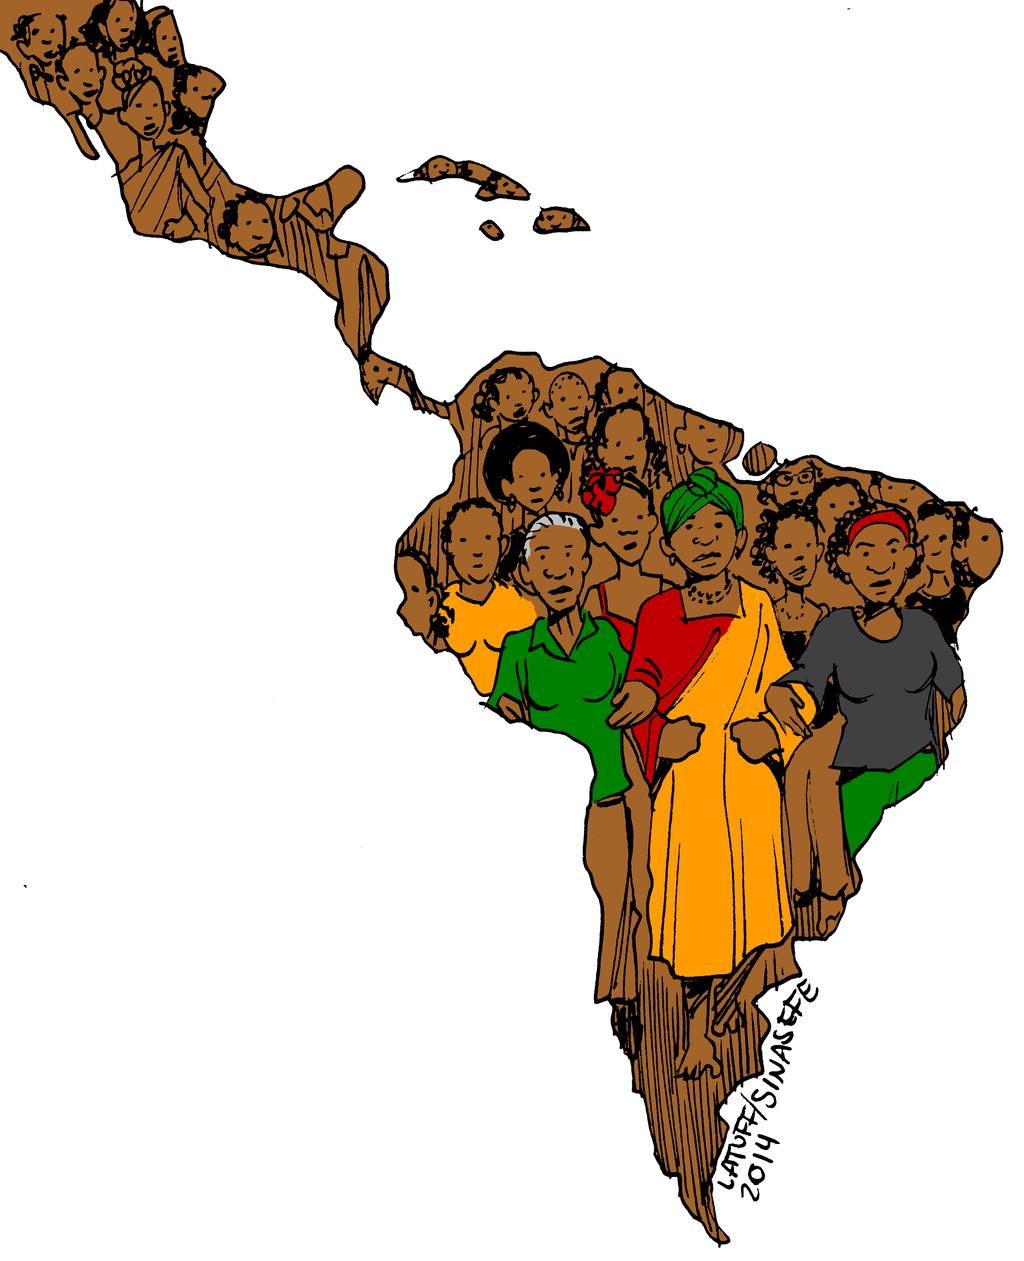 Dia 25 de Julho: desde 1992, o Dia Internacional da Mulher Afro-Latina e Afro-Caribenha Esta data foi instituída na República Dominicana em 1992, depois do primeiro encontro de mulheres negras da